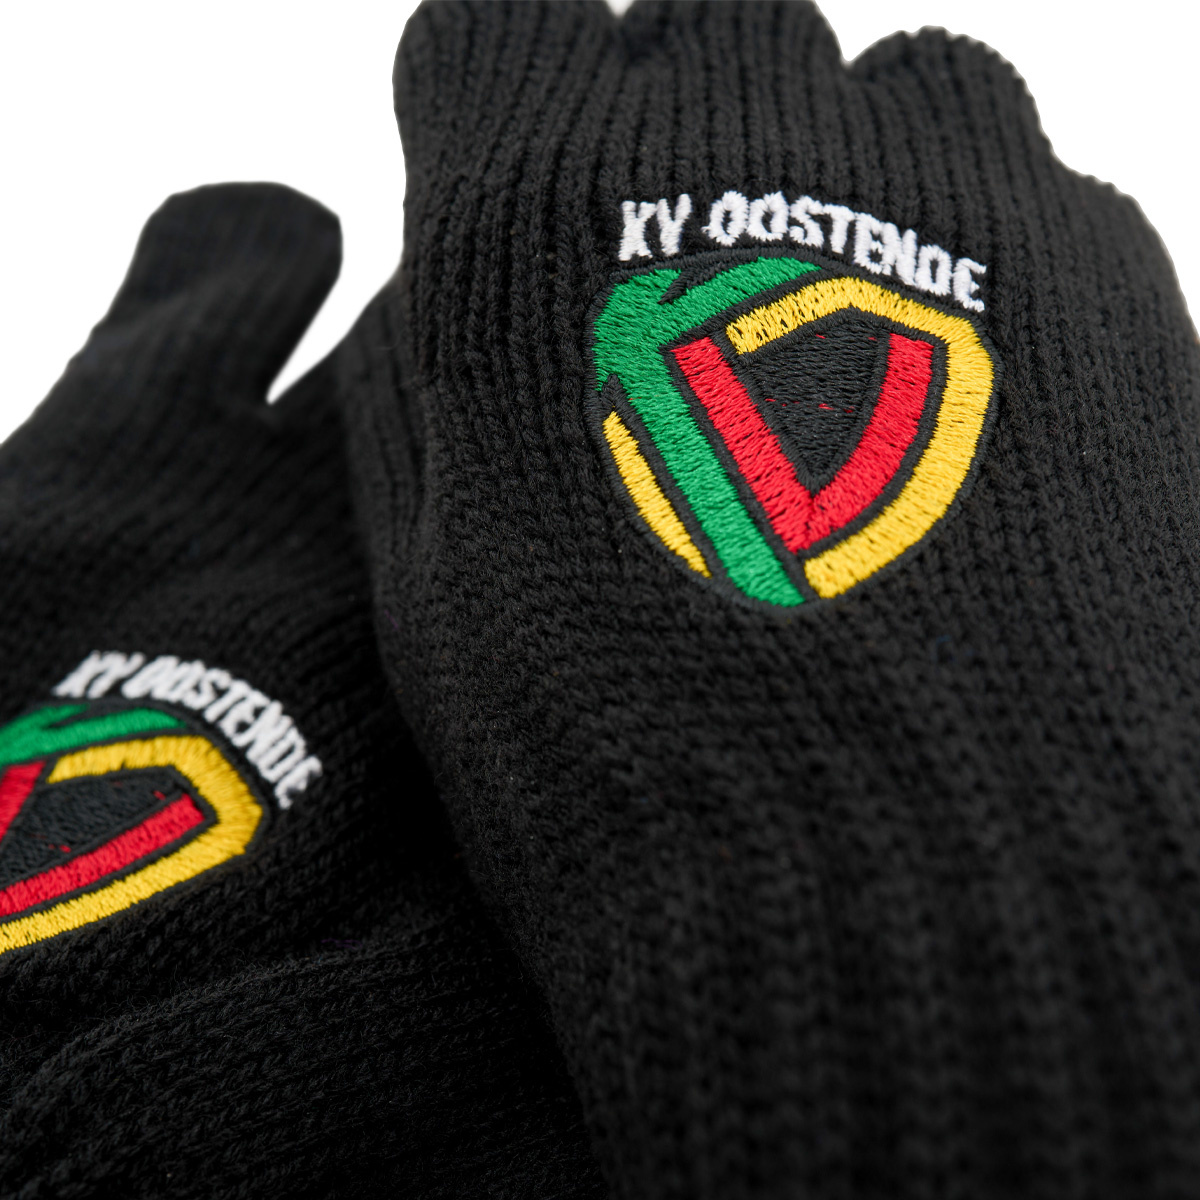 Topfanz Handschoenen zwart KV Oostende